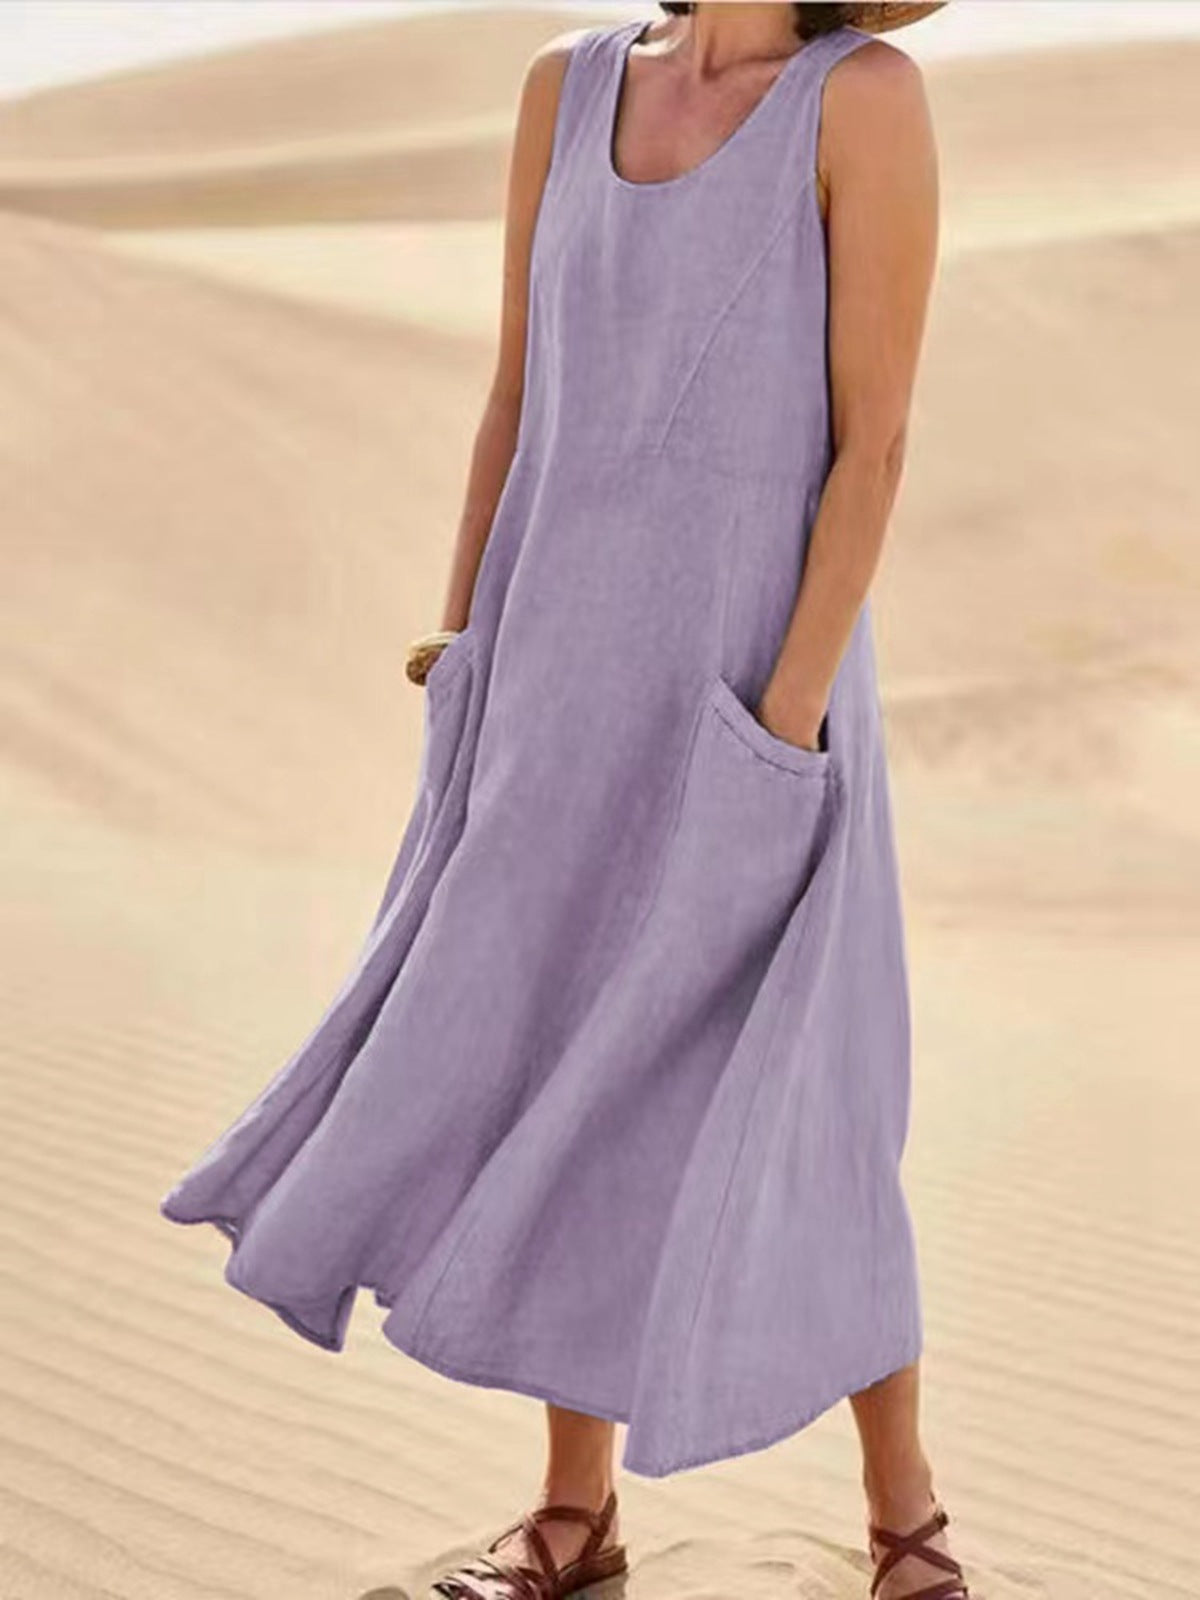 Women's Summer Sleeveless Cotton Linen Dress Dresses